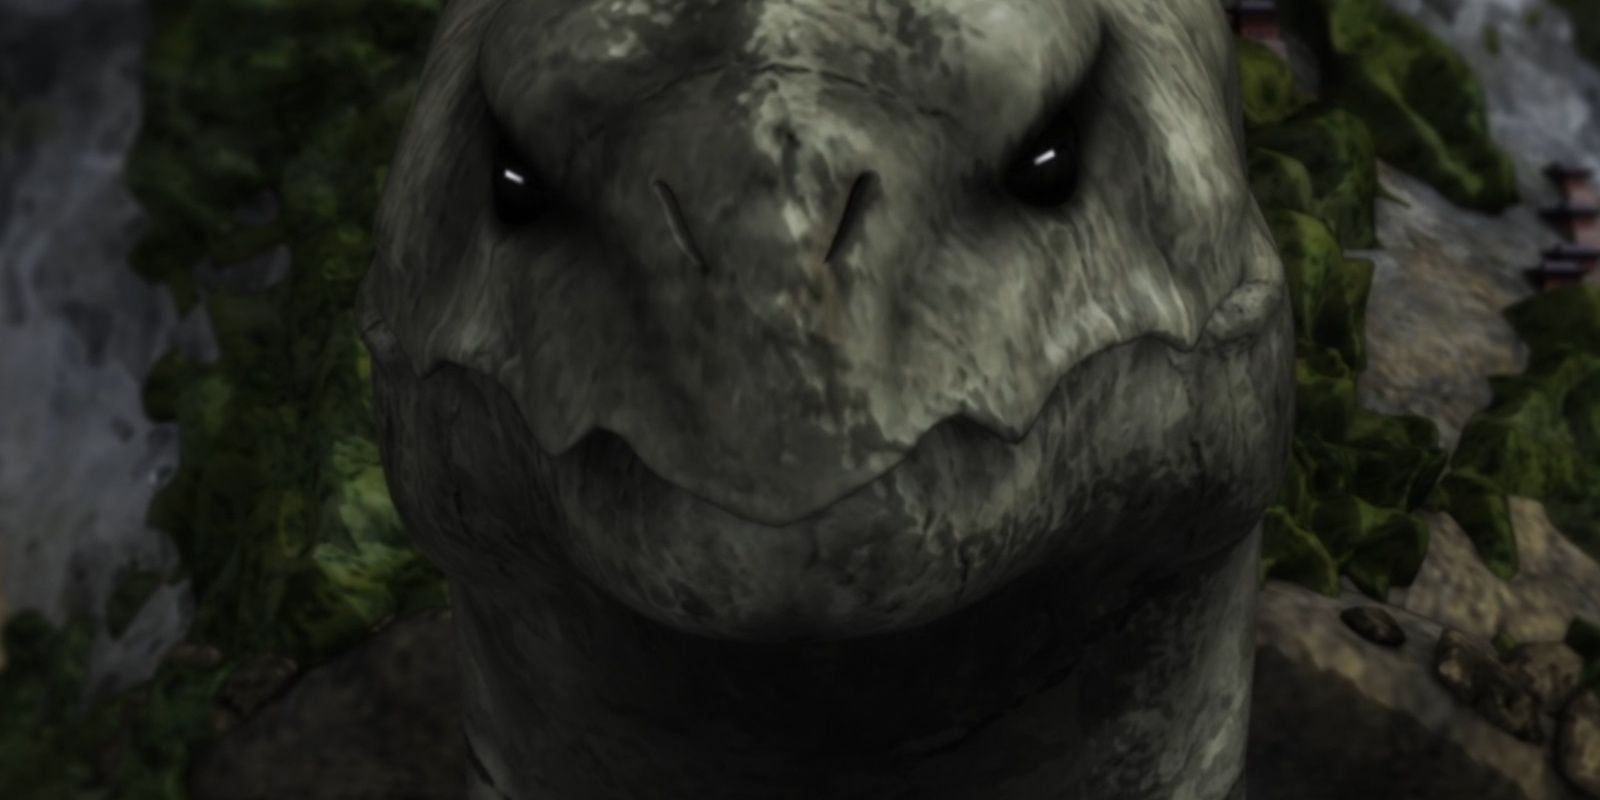 spirit tortoise face